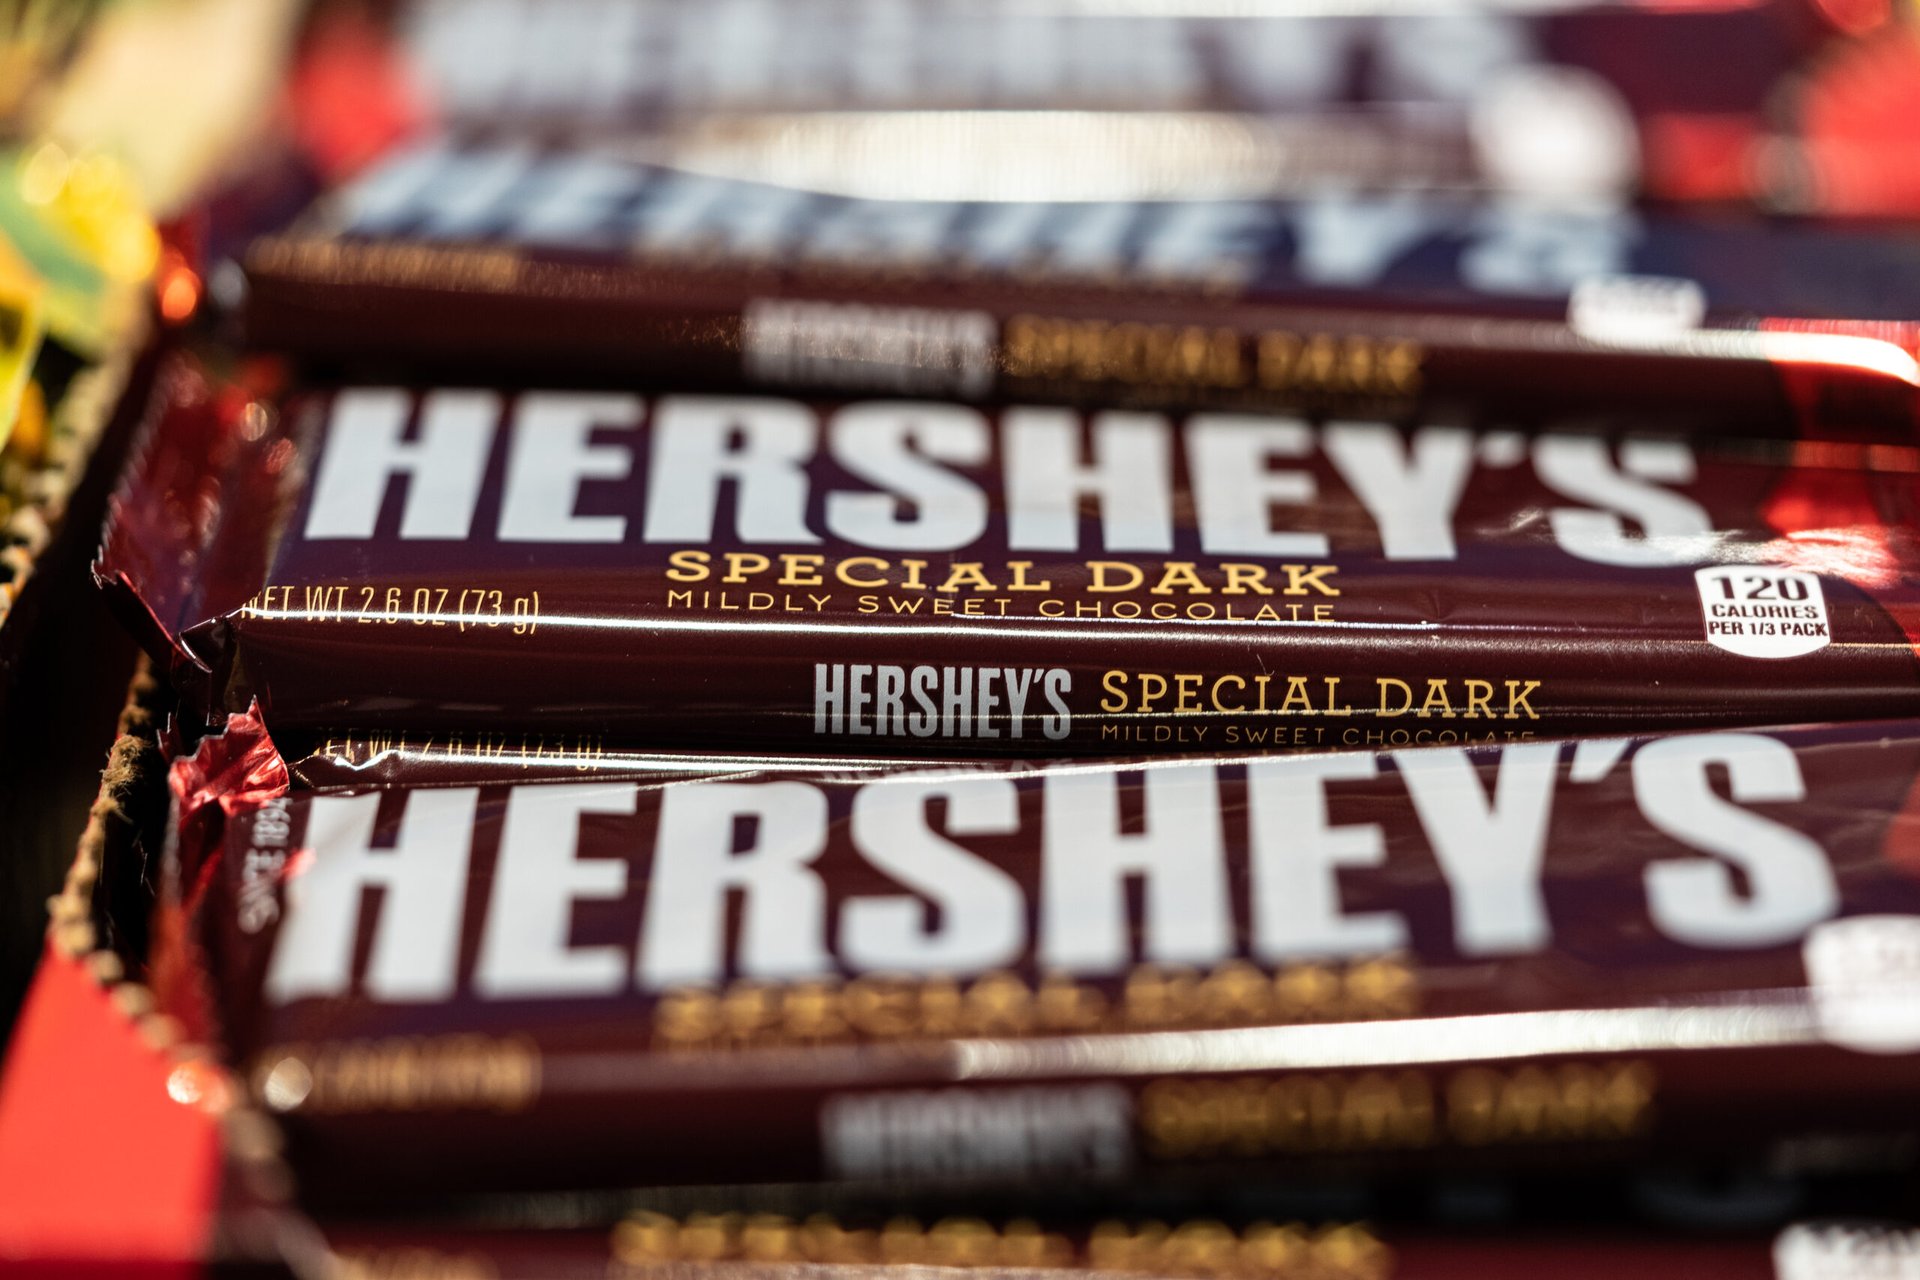 Hershey's Special Dark chocolate bars